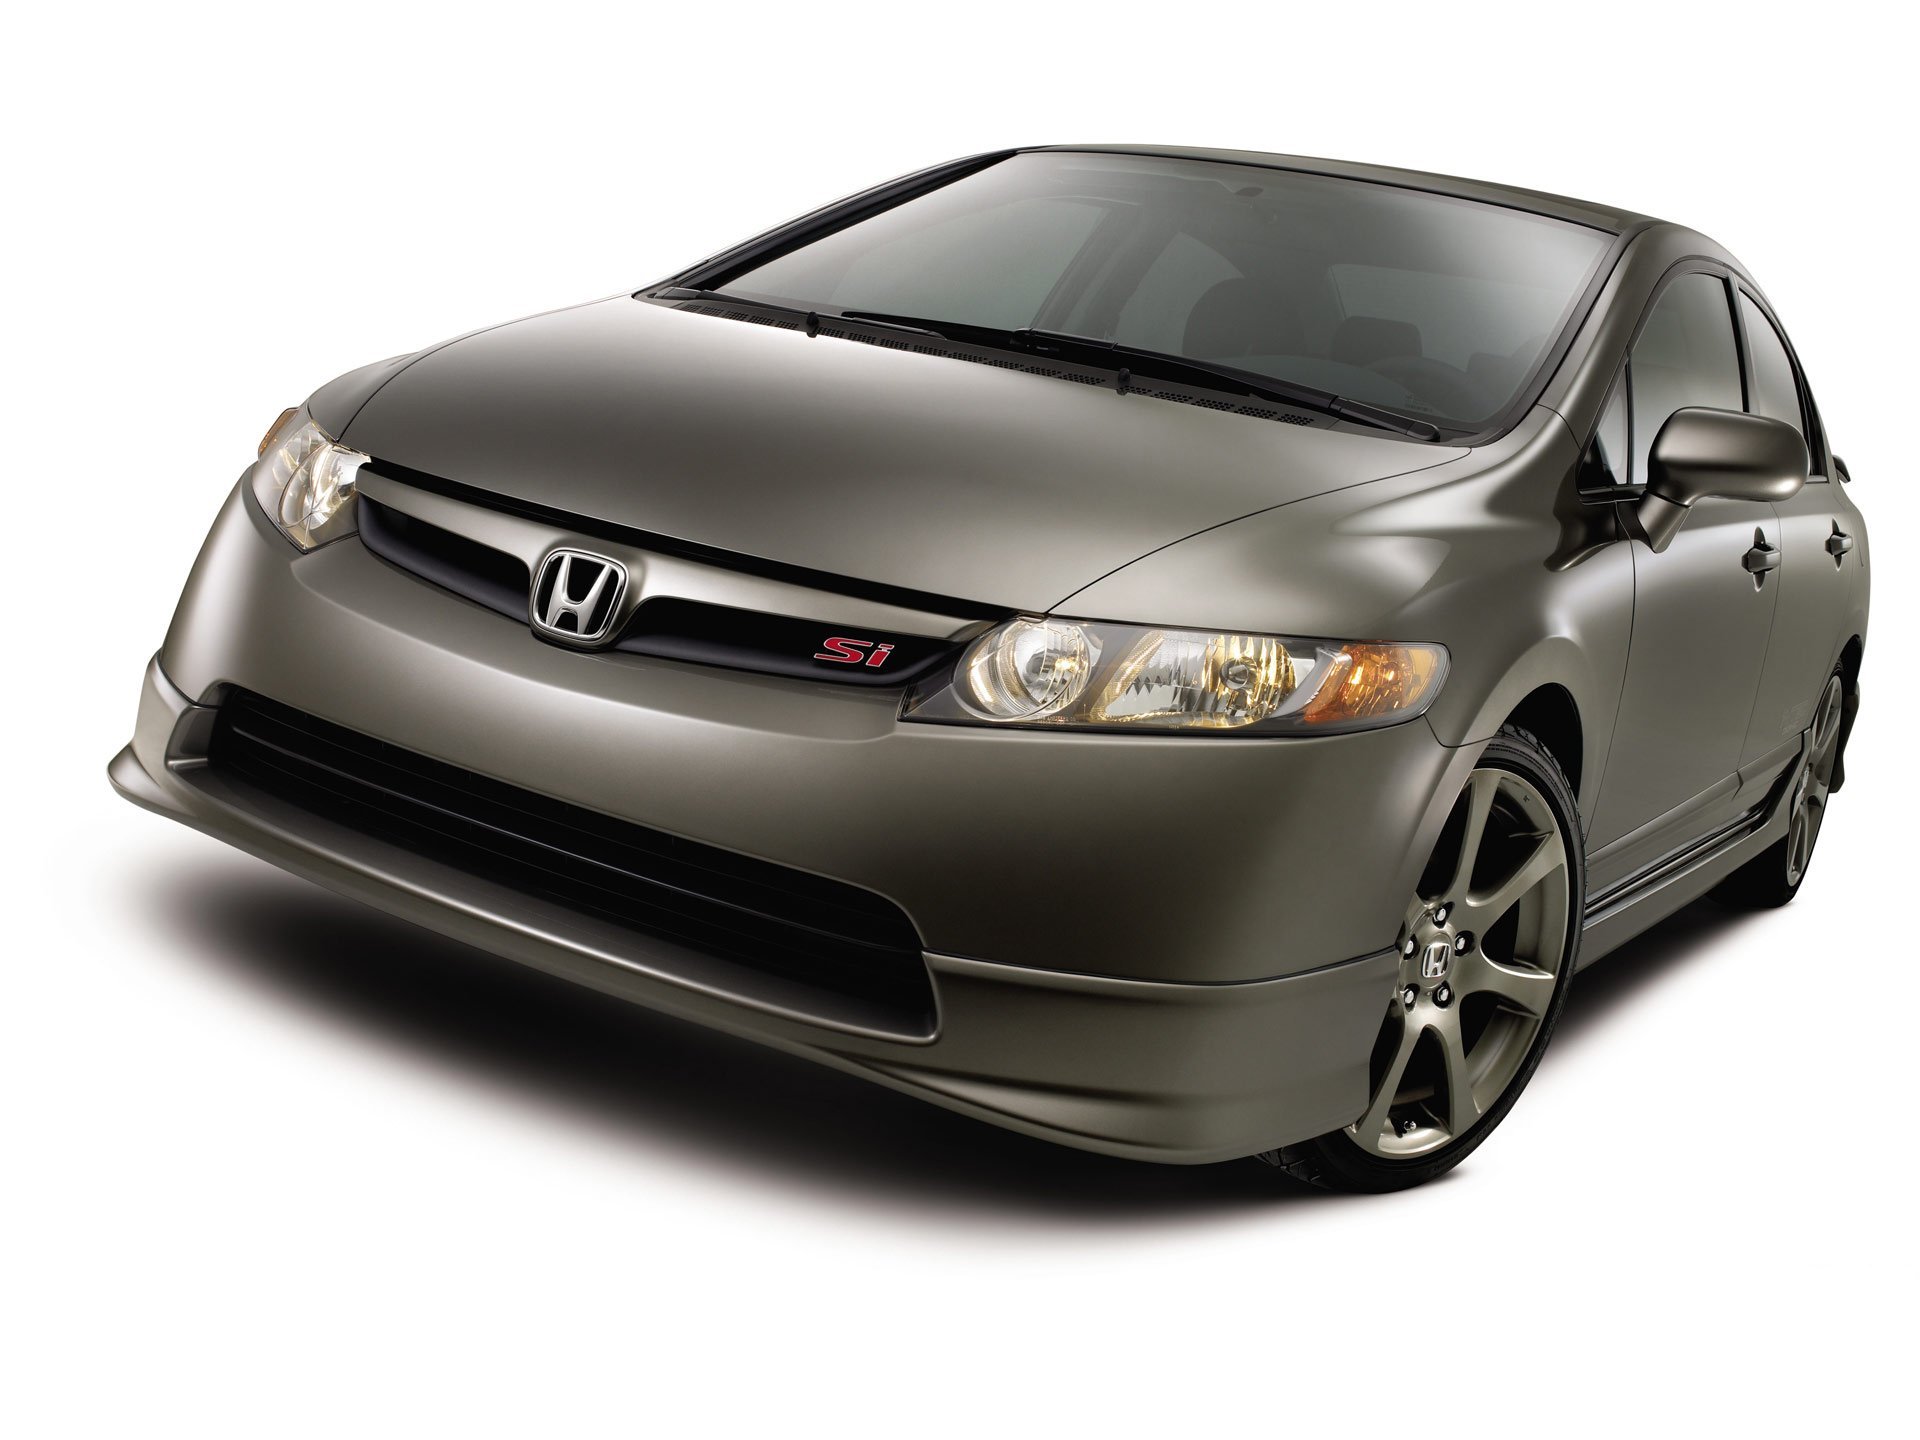 Www honda ru. Honda Civic si sedan 2007. Honda Civic 8. Honda Civic 2008 седан. Хонда Цивик 2005 седан.